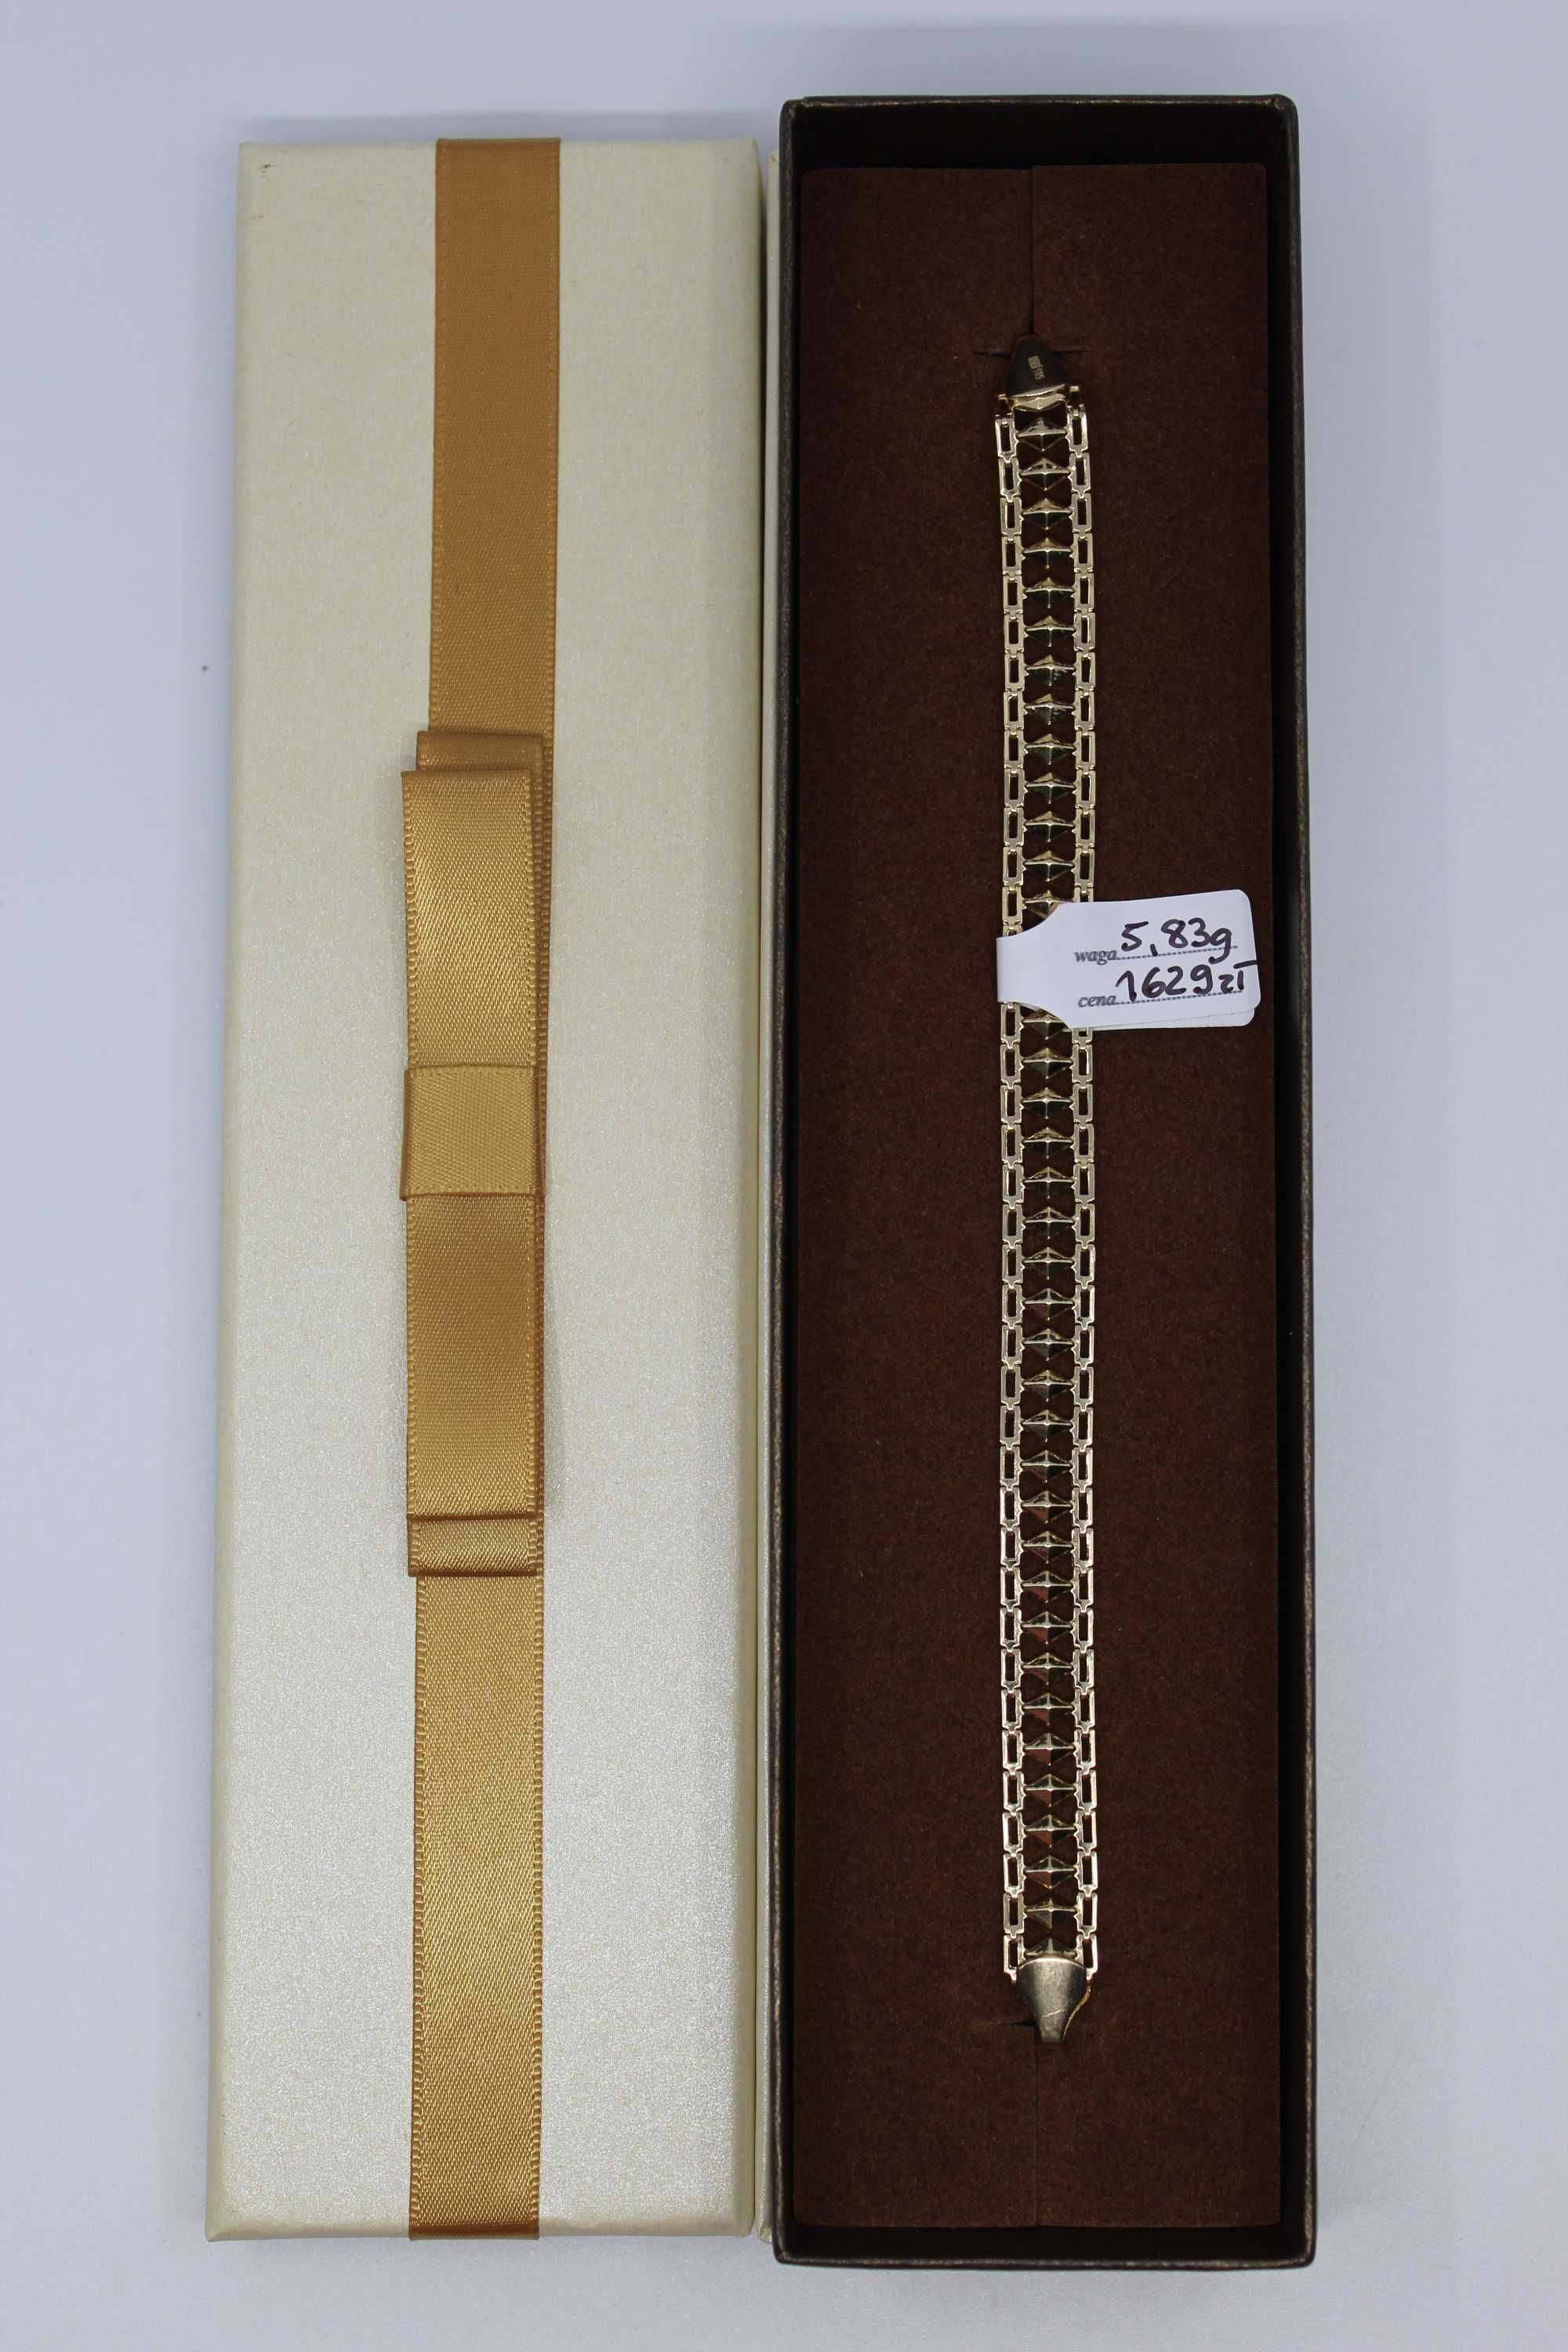 Złoto/Złota bransoletka 585 14K 5,83 gram Nowa Piękna